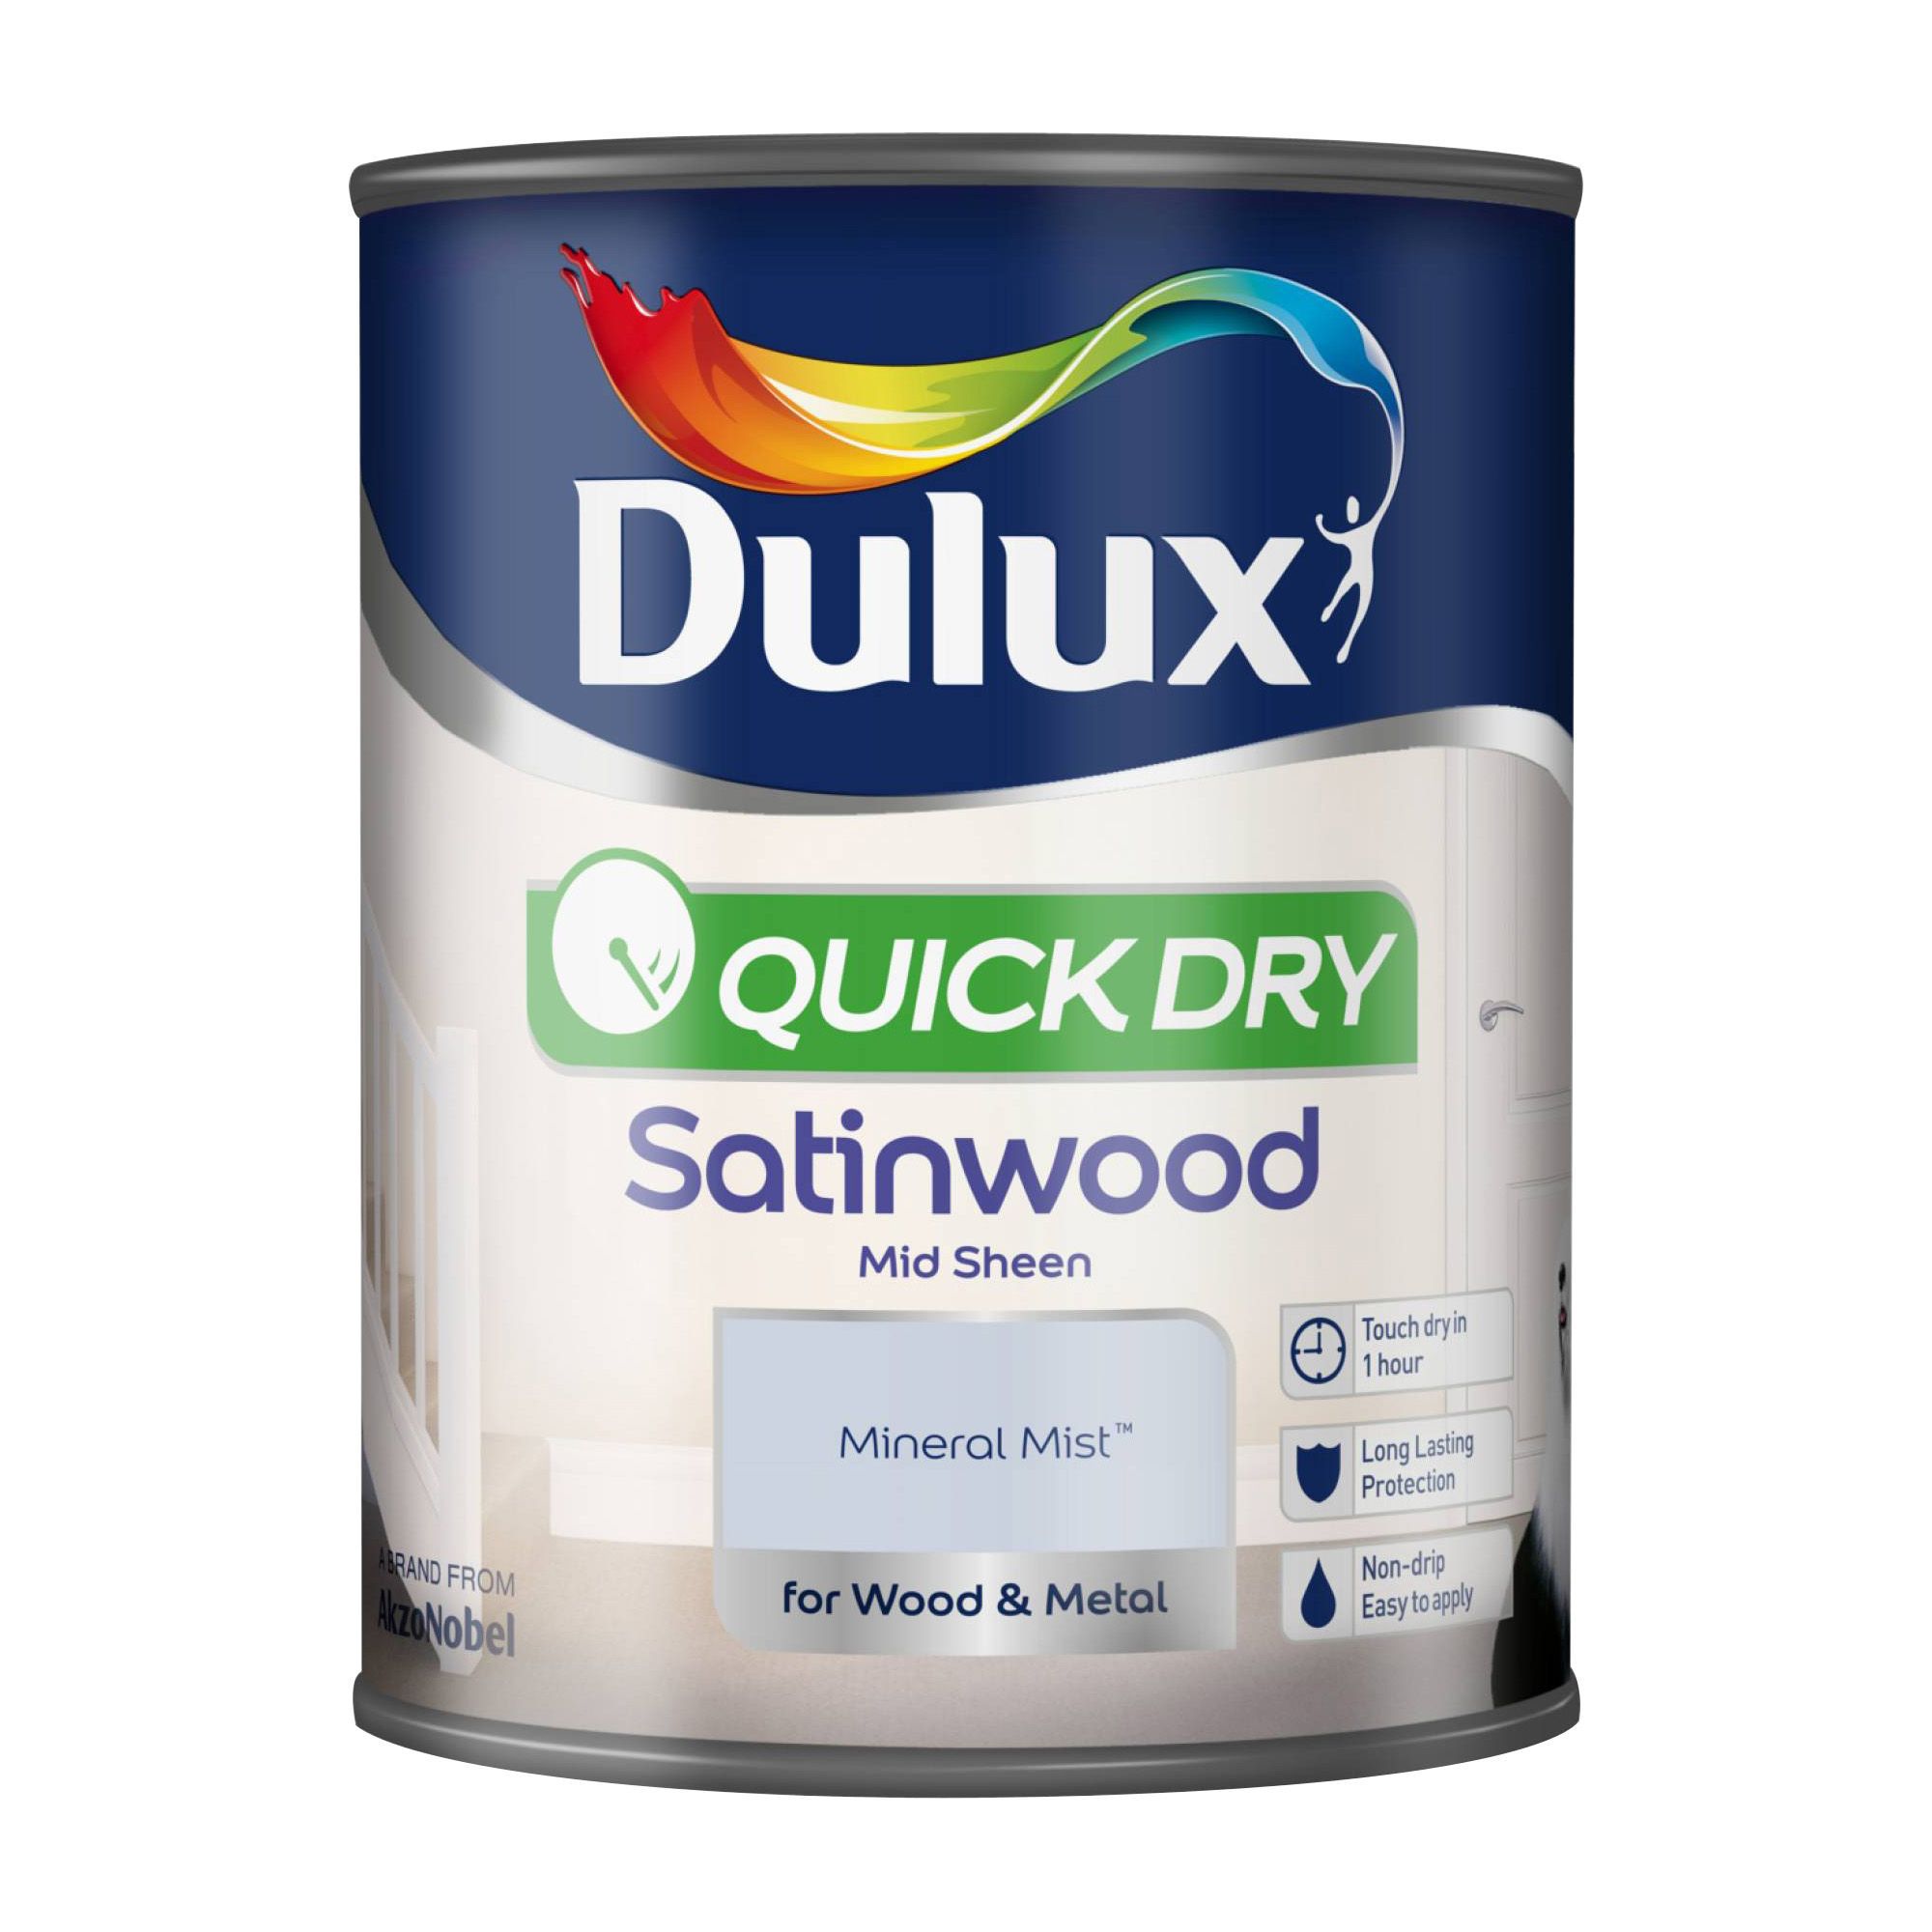 Dulux Mineral mist Satinwood Metal & wood paint, 750ml